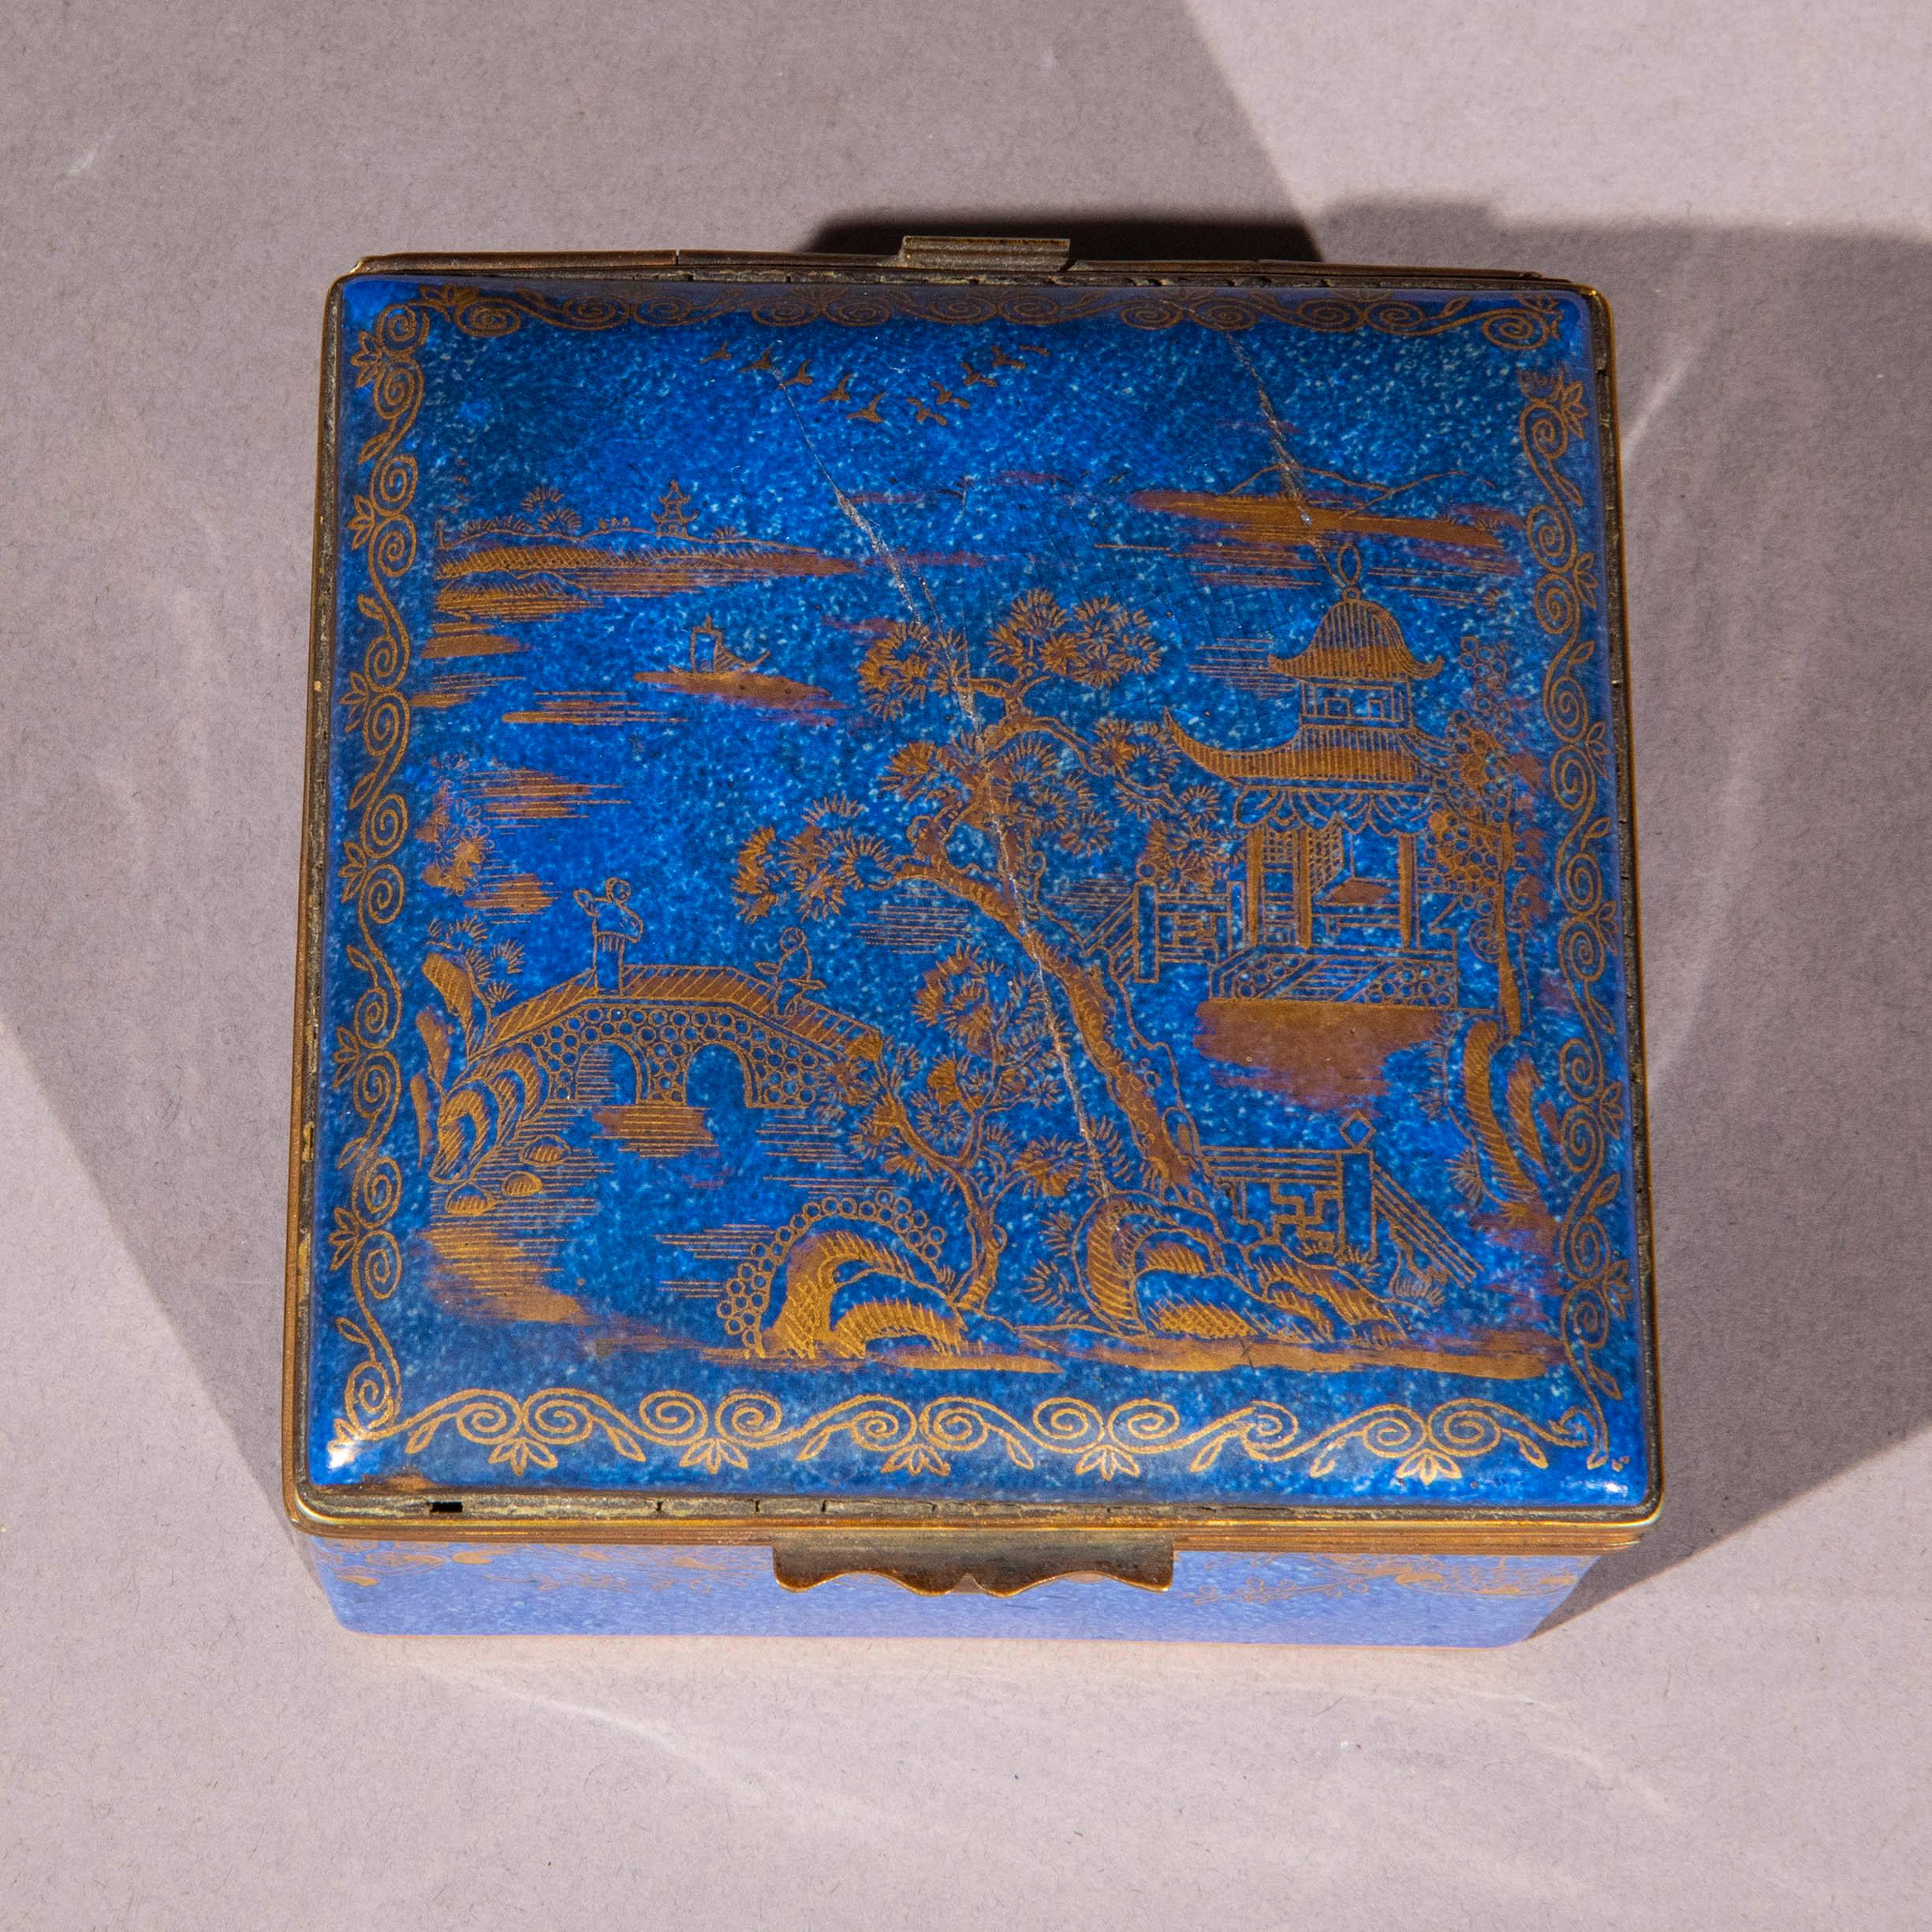 Charmante boîte en porcelaine Crown Staffordshire émaillée en bleu chiné, de style chinoiserie.
Angleterre, vers 1900-1920.

Pourquoi nous l'aimons
La couleur 